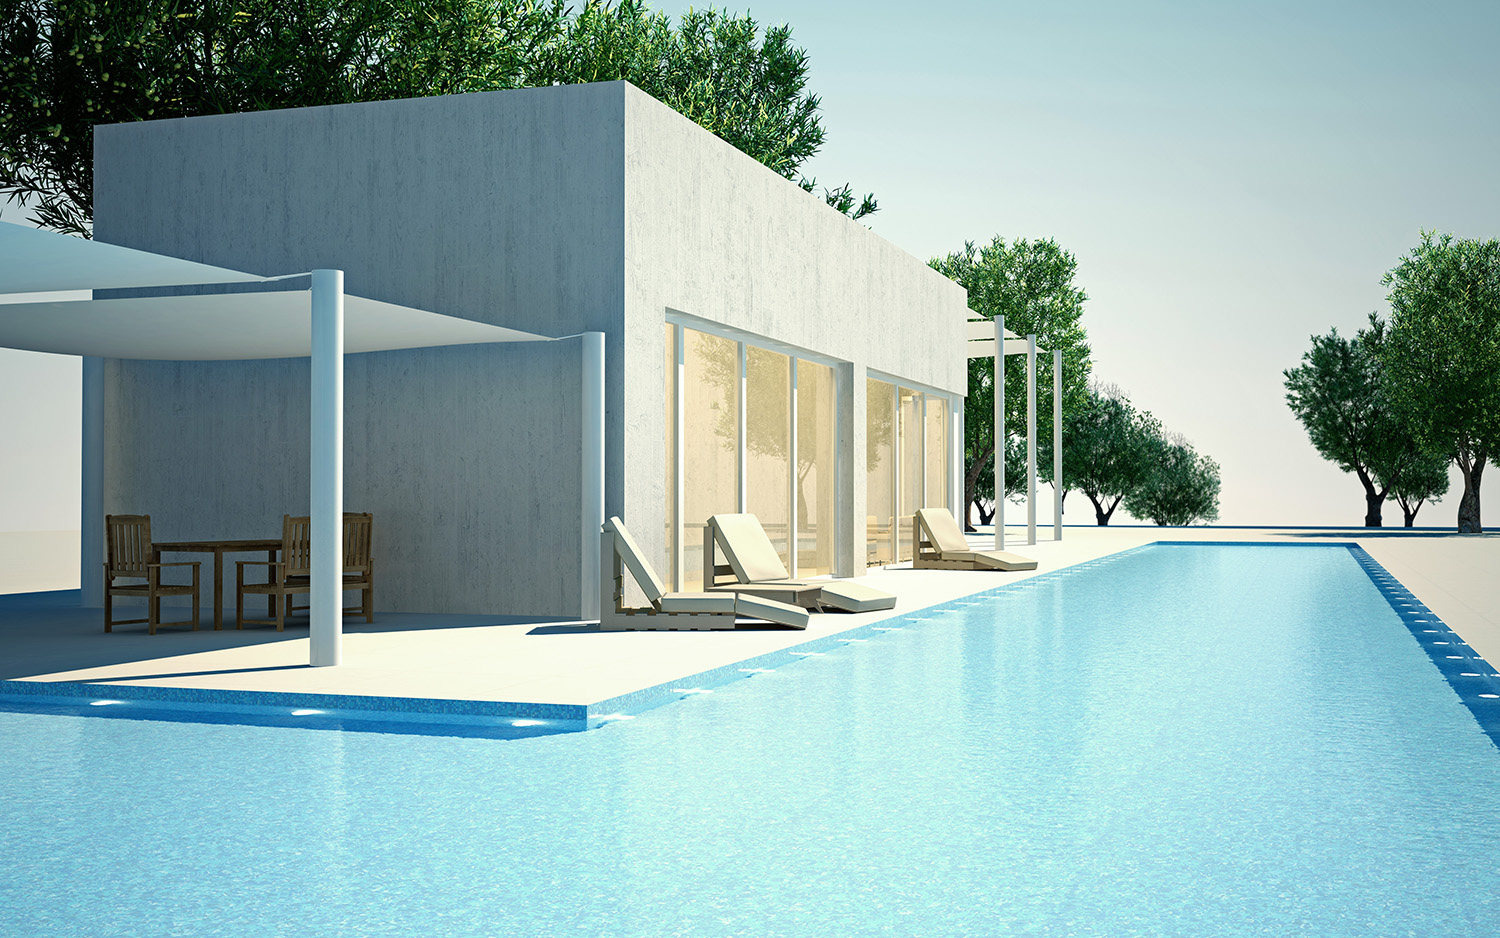 Cabinet d'architecture Alicante: construction de piscine en chalets ou maisons individuelles avec leur propre terrain.